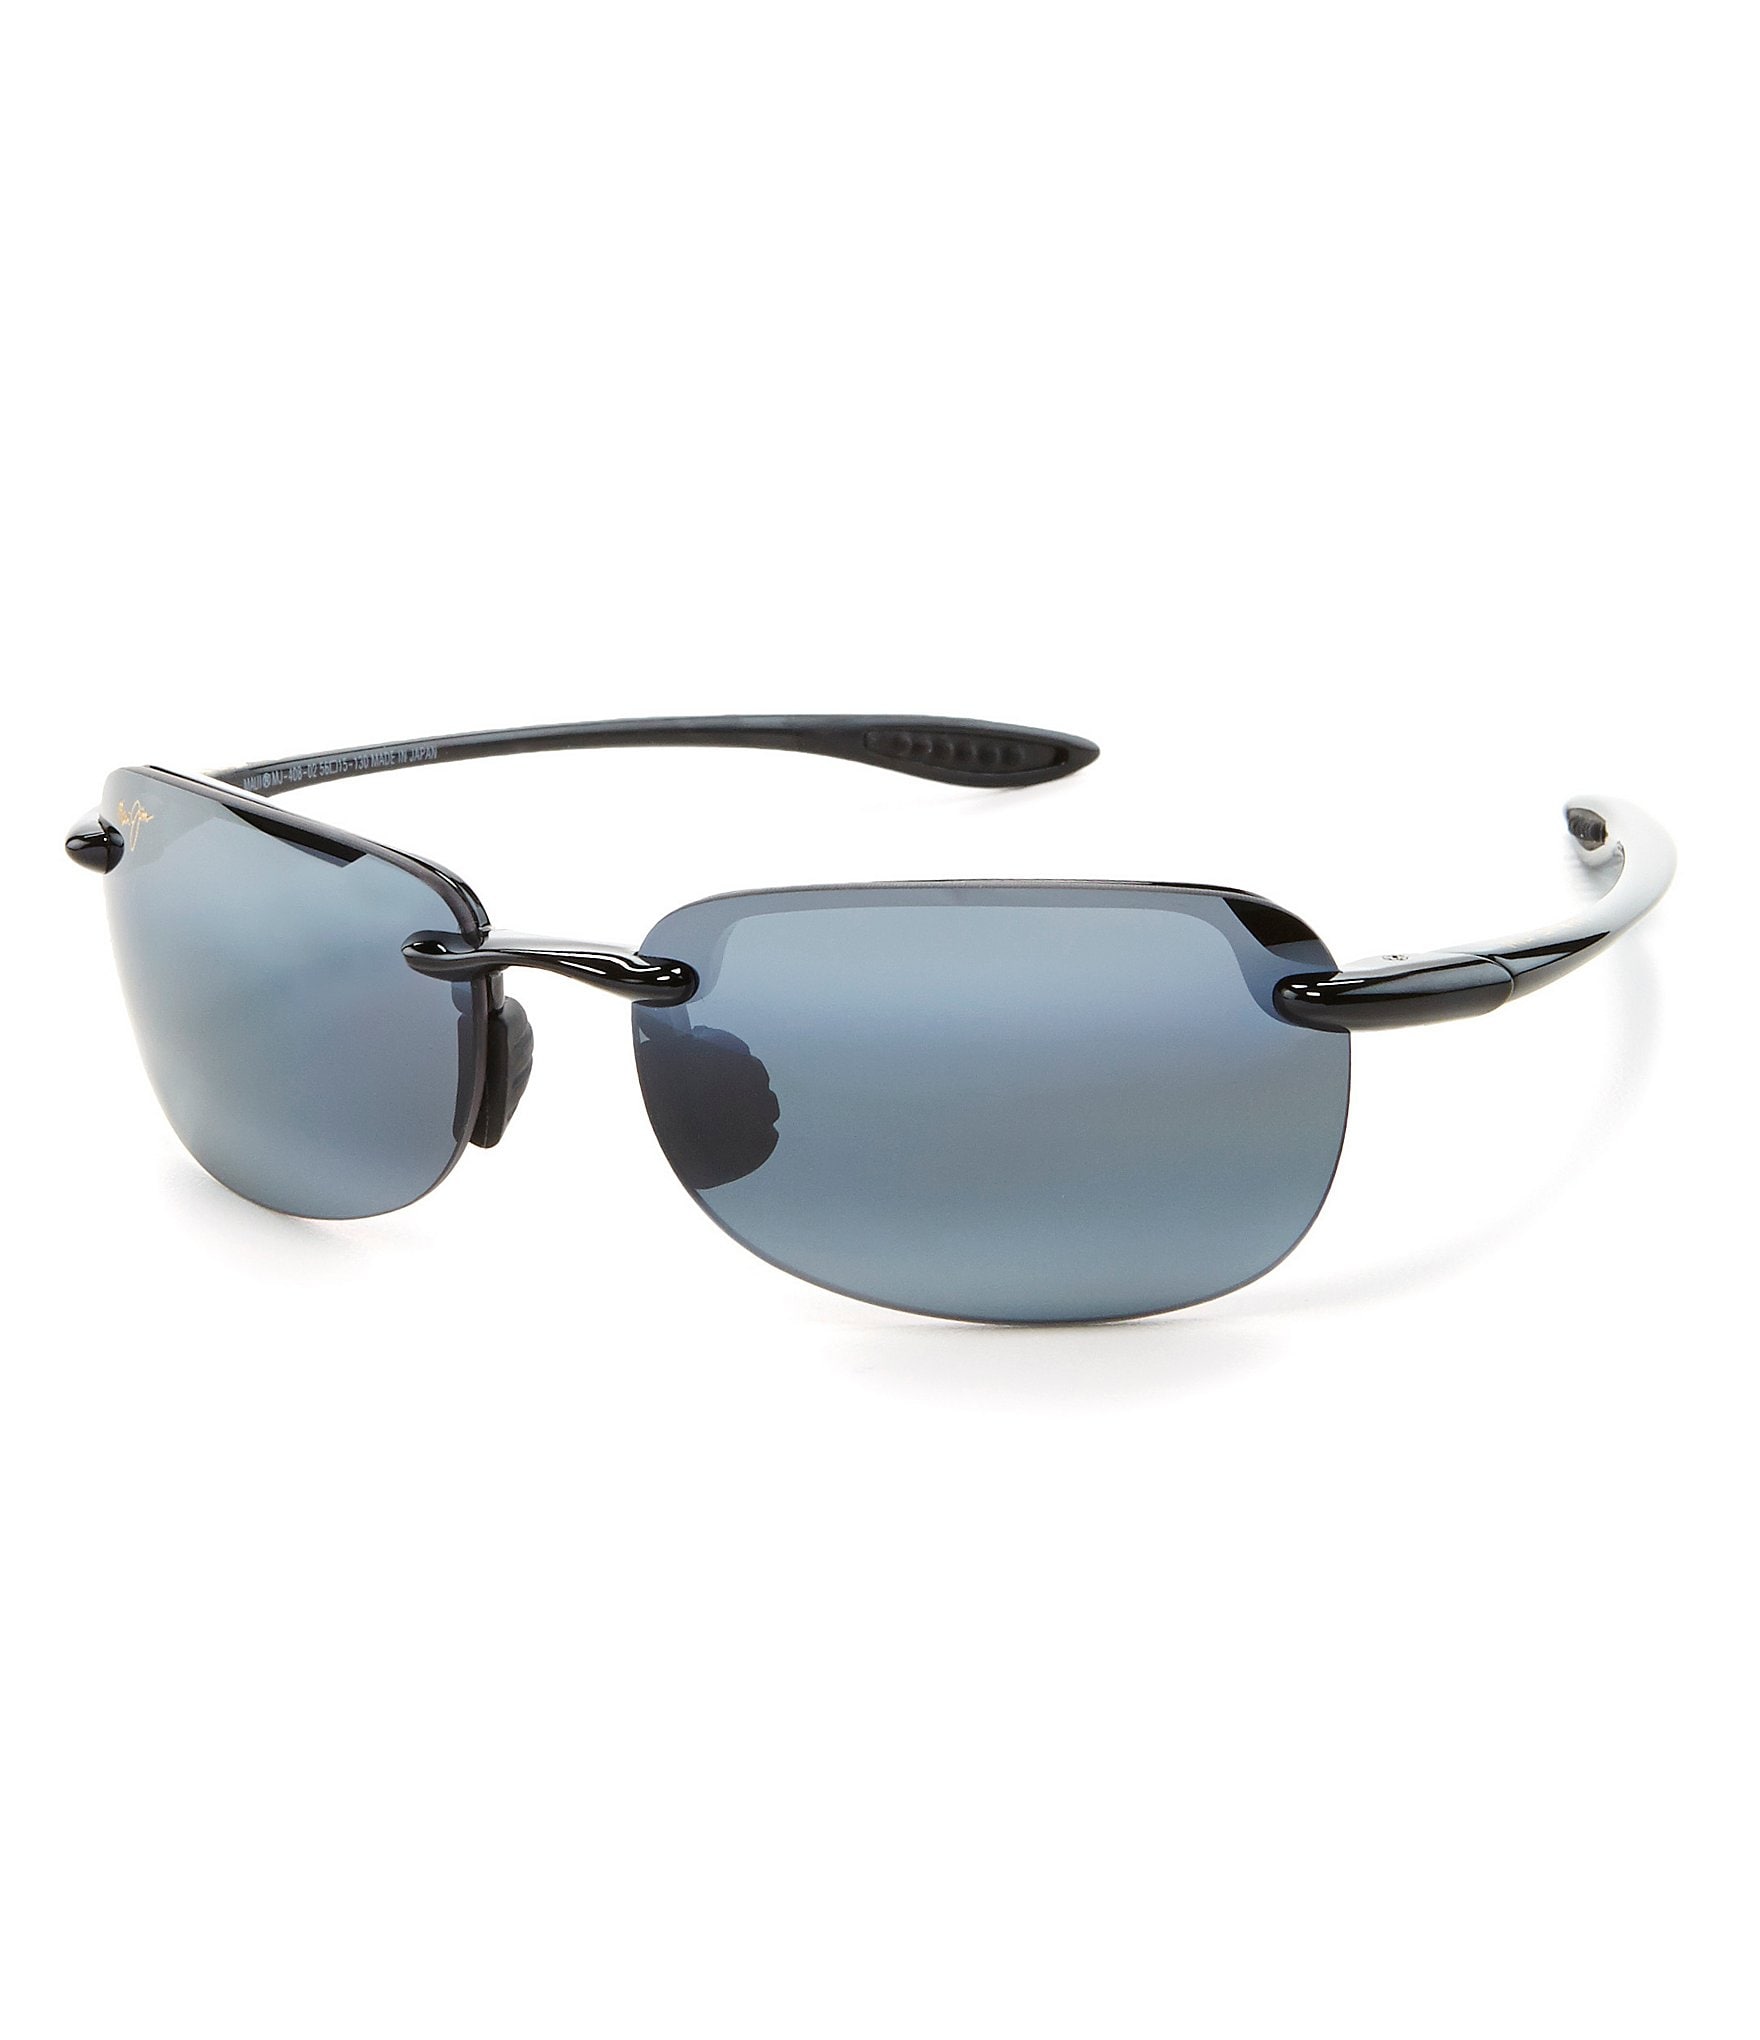 Shop Fishing Sunglasses | Maui Jim® Polarized Sunglasses for Fishing